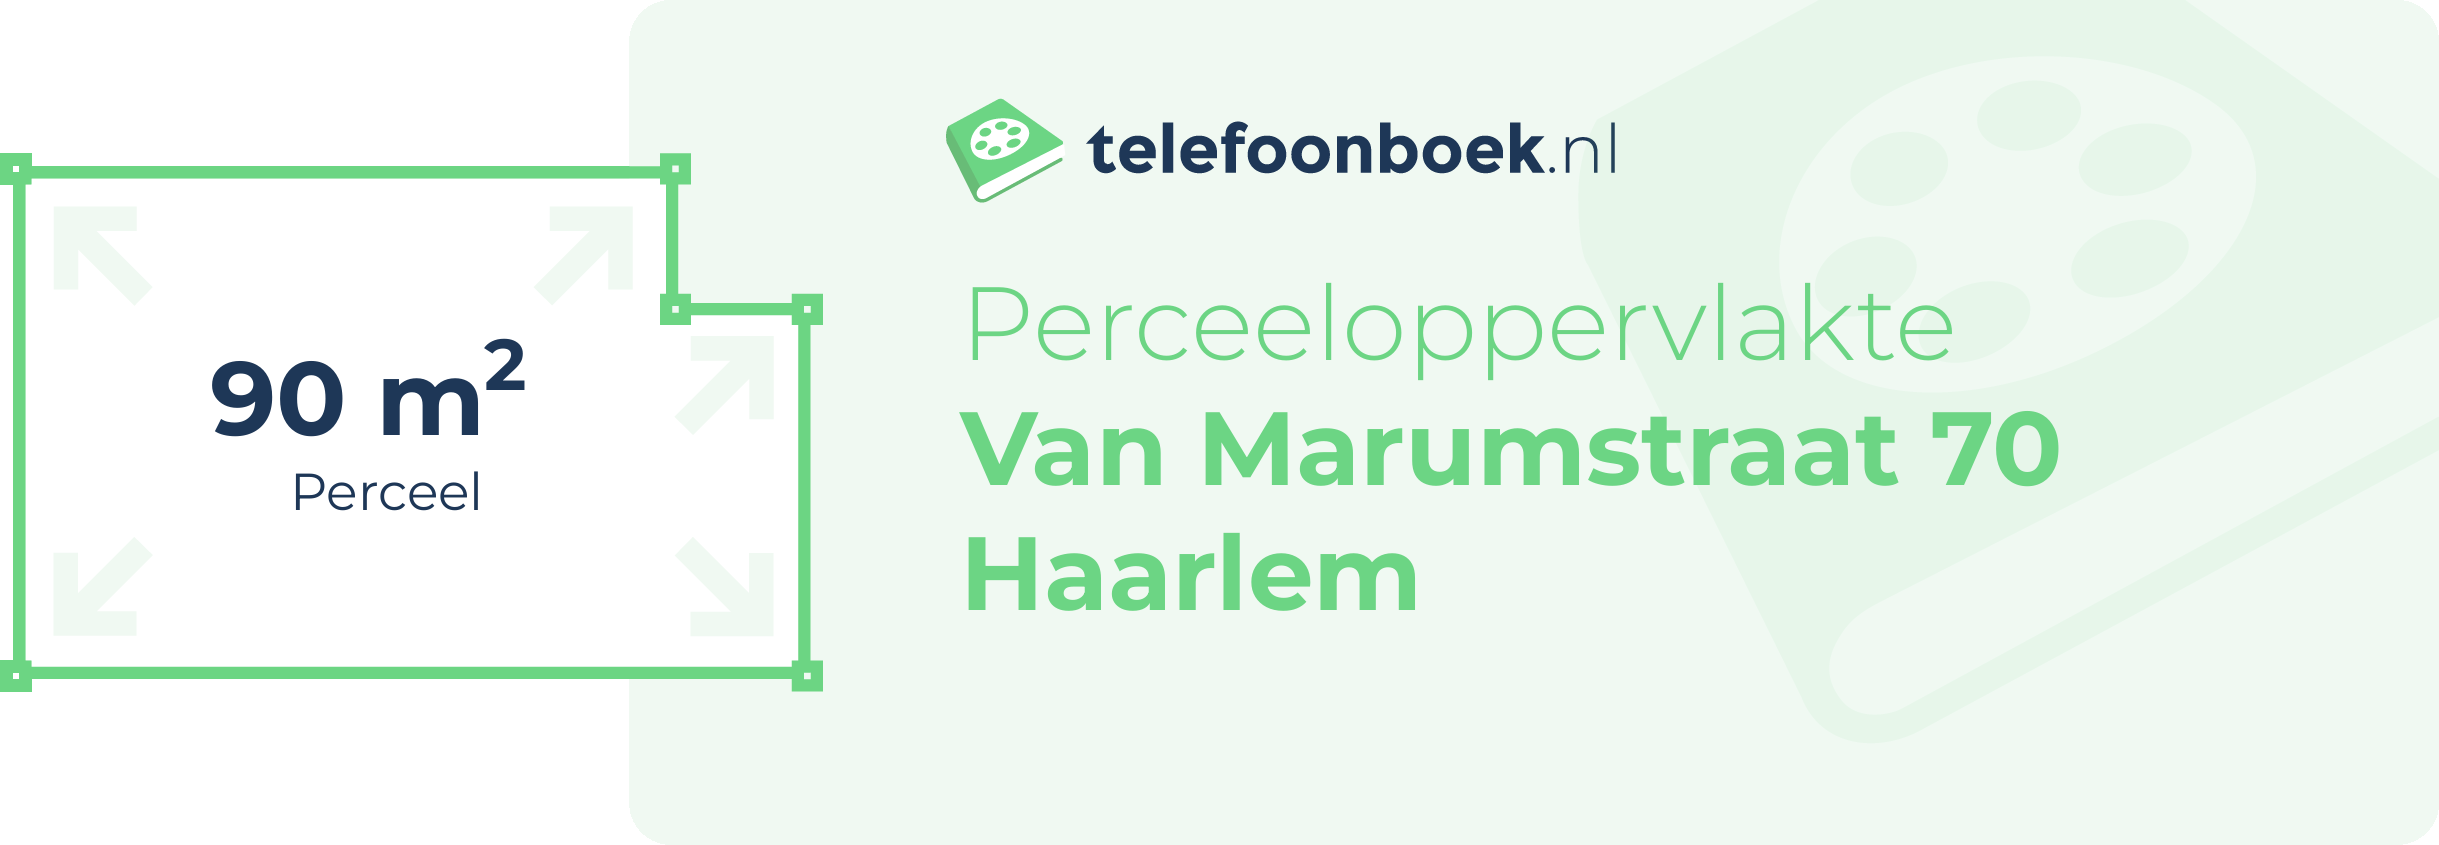 Perceeloppervlakte Van Marumstraat 70 Haarlem